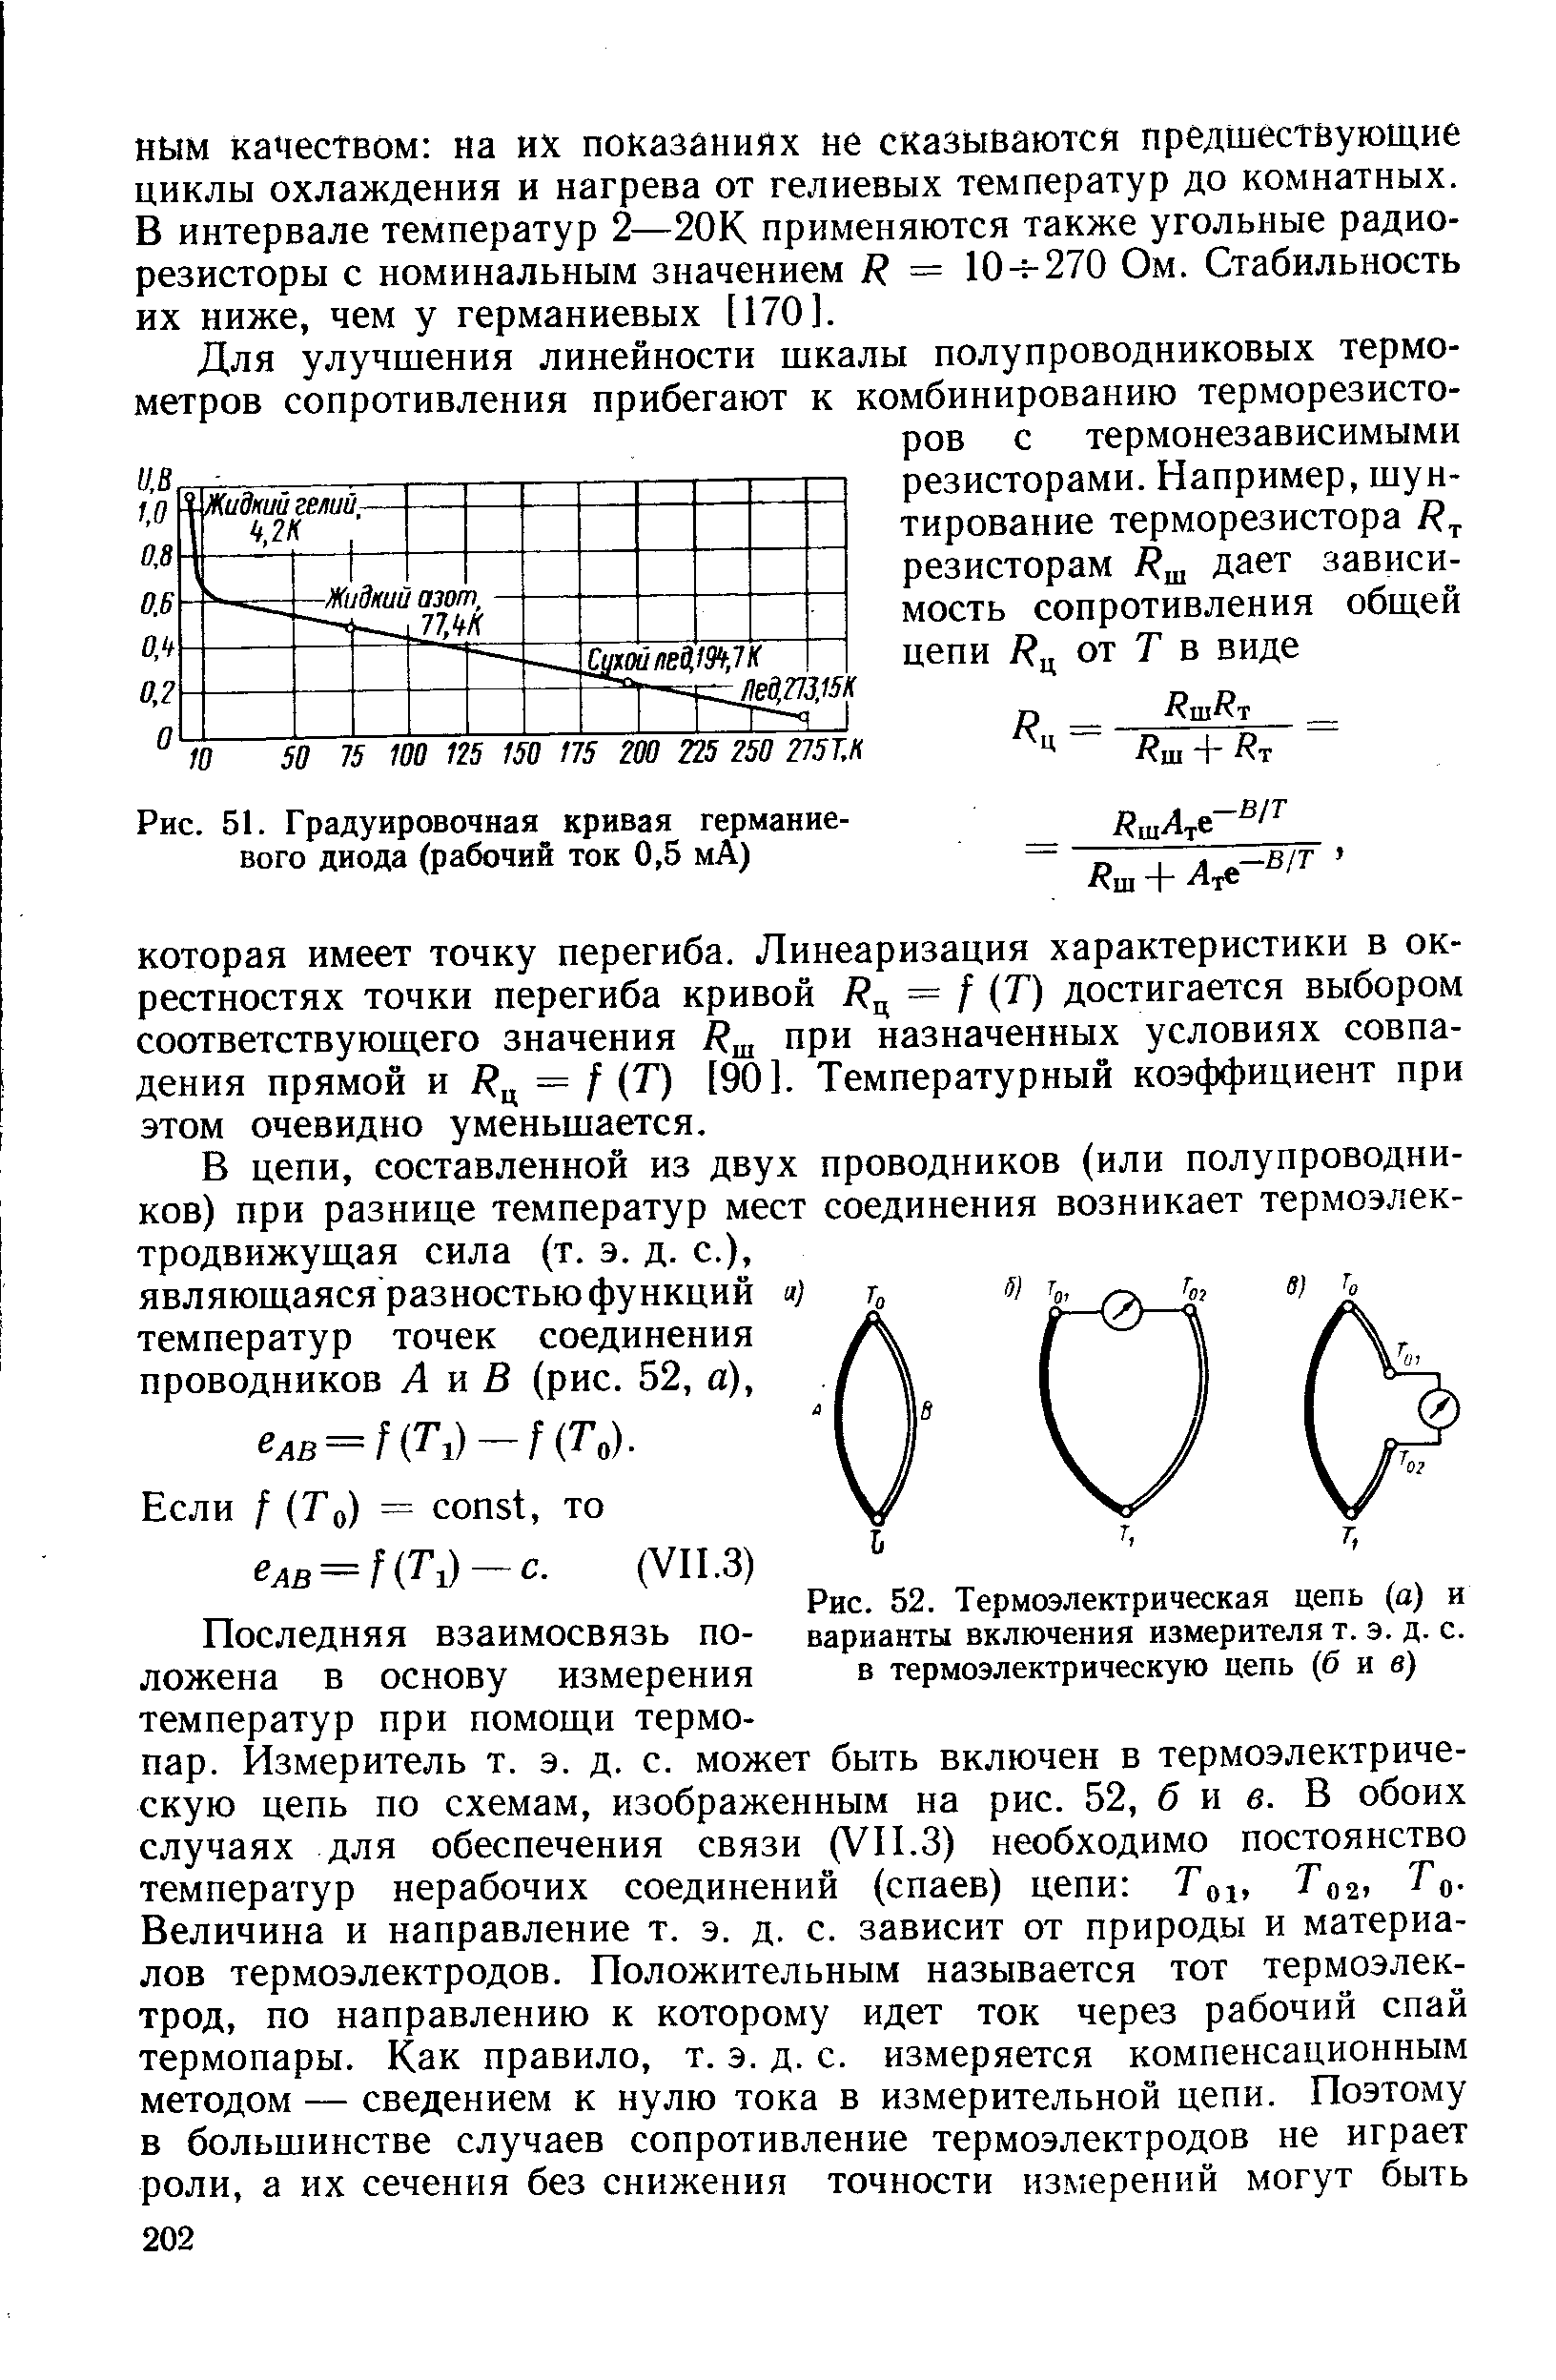 Рис. 52. Термоэлектрическая цепь (а) и варианты включения измерителя т. э. д. с. в термоэлектрическую цепь (б и в)
